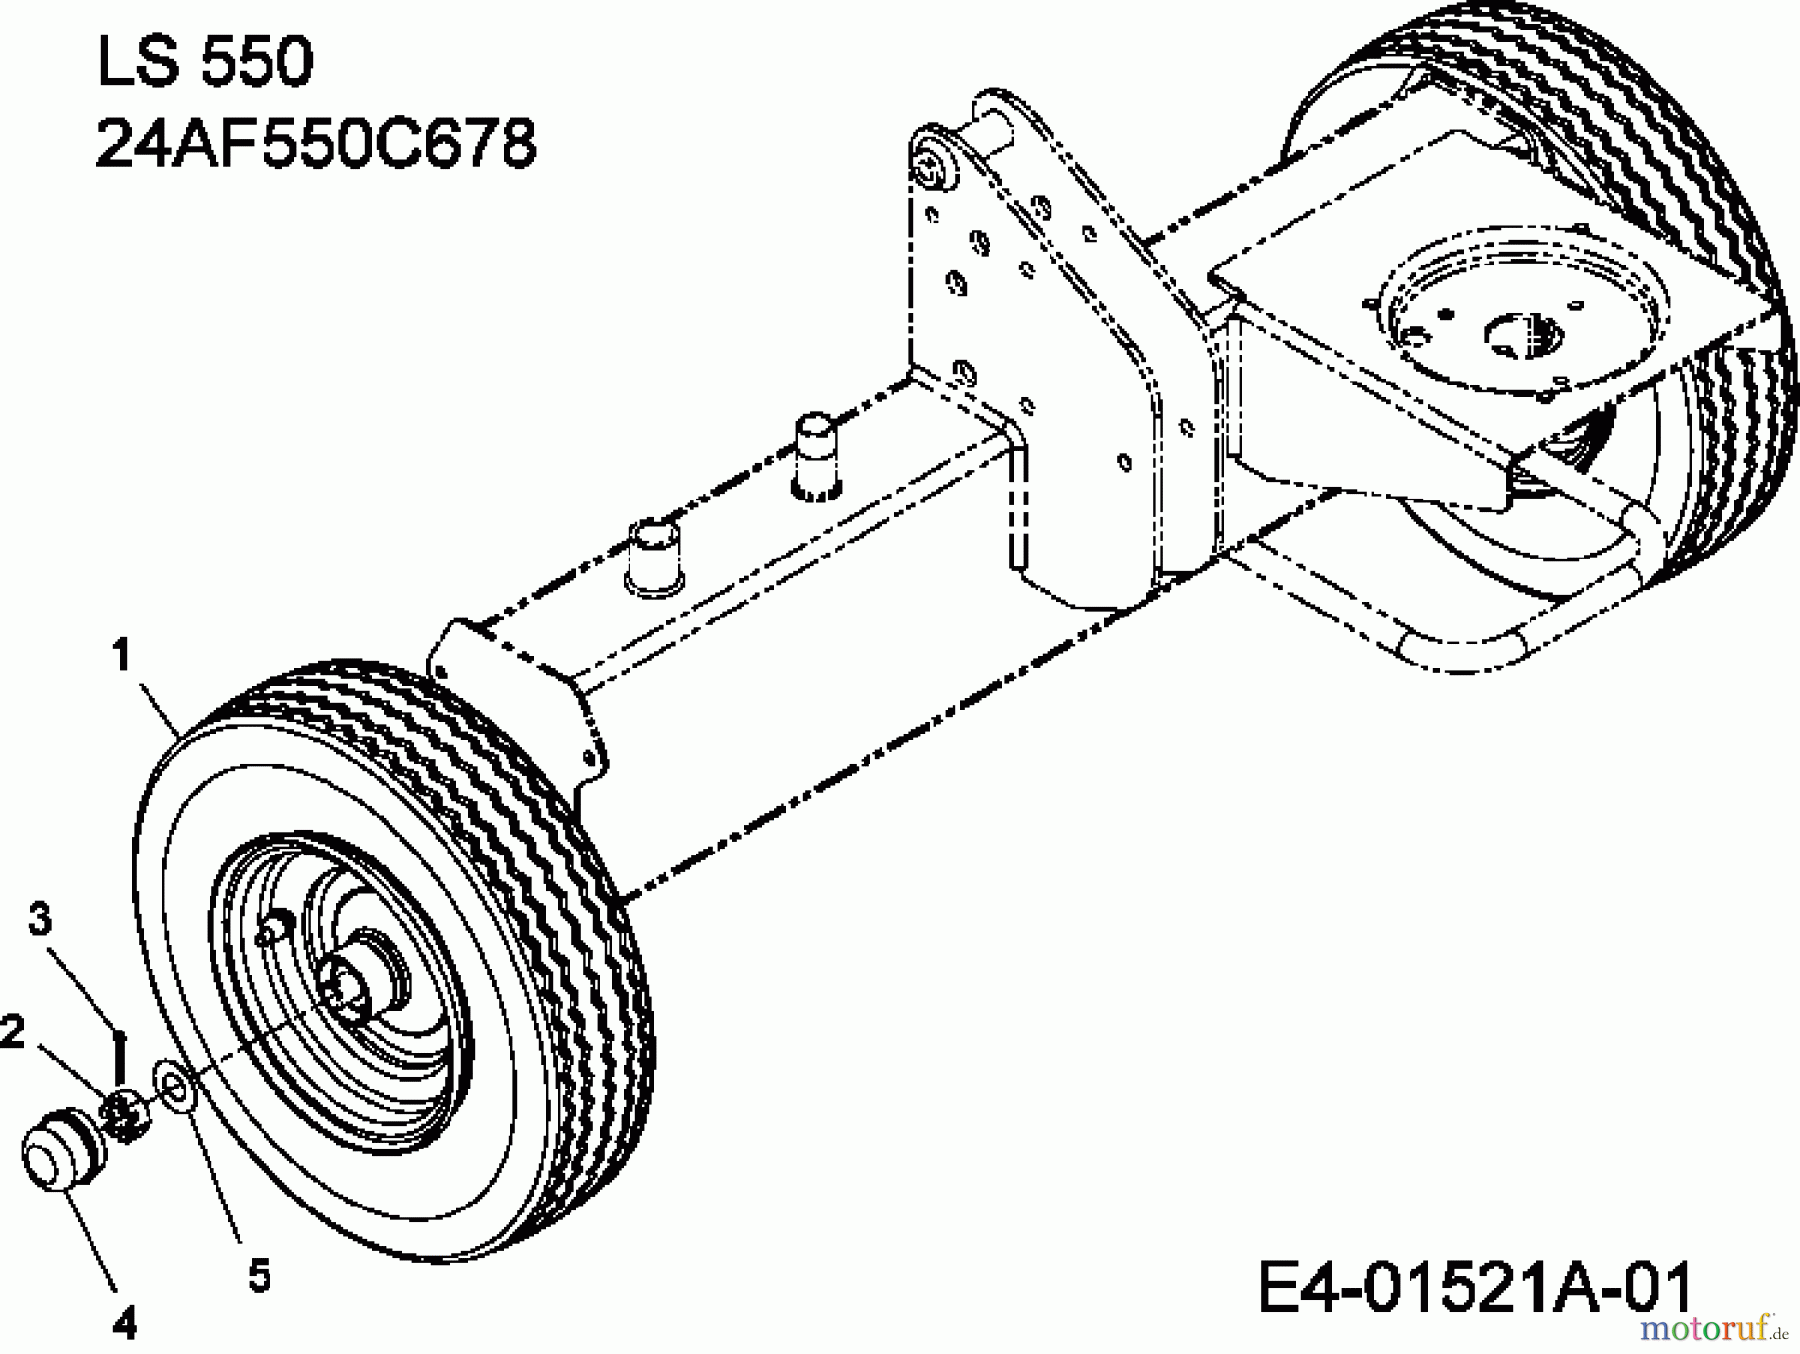  MTD Log splitter LS 550 24AF550C678  (2008) Wheels